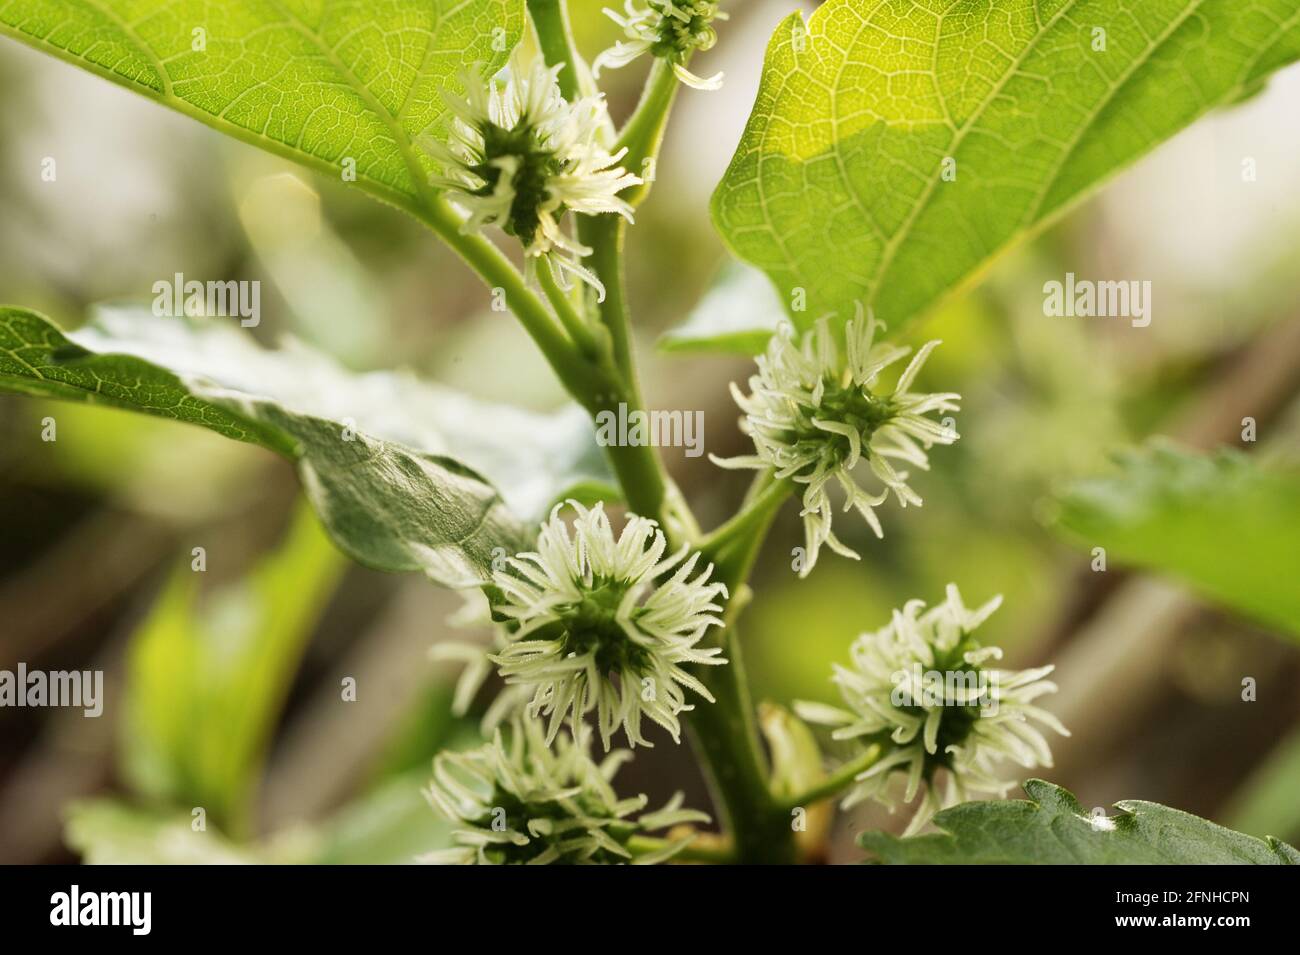 fruta verde joven de la morera en el árbol Foto de stock